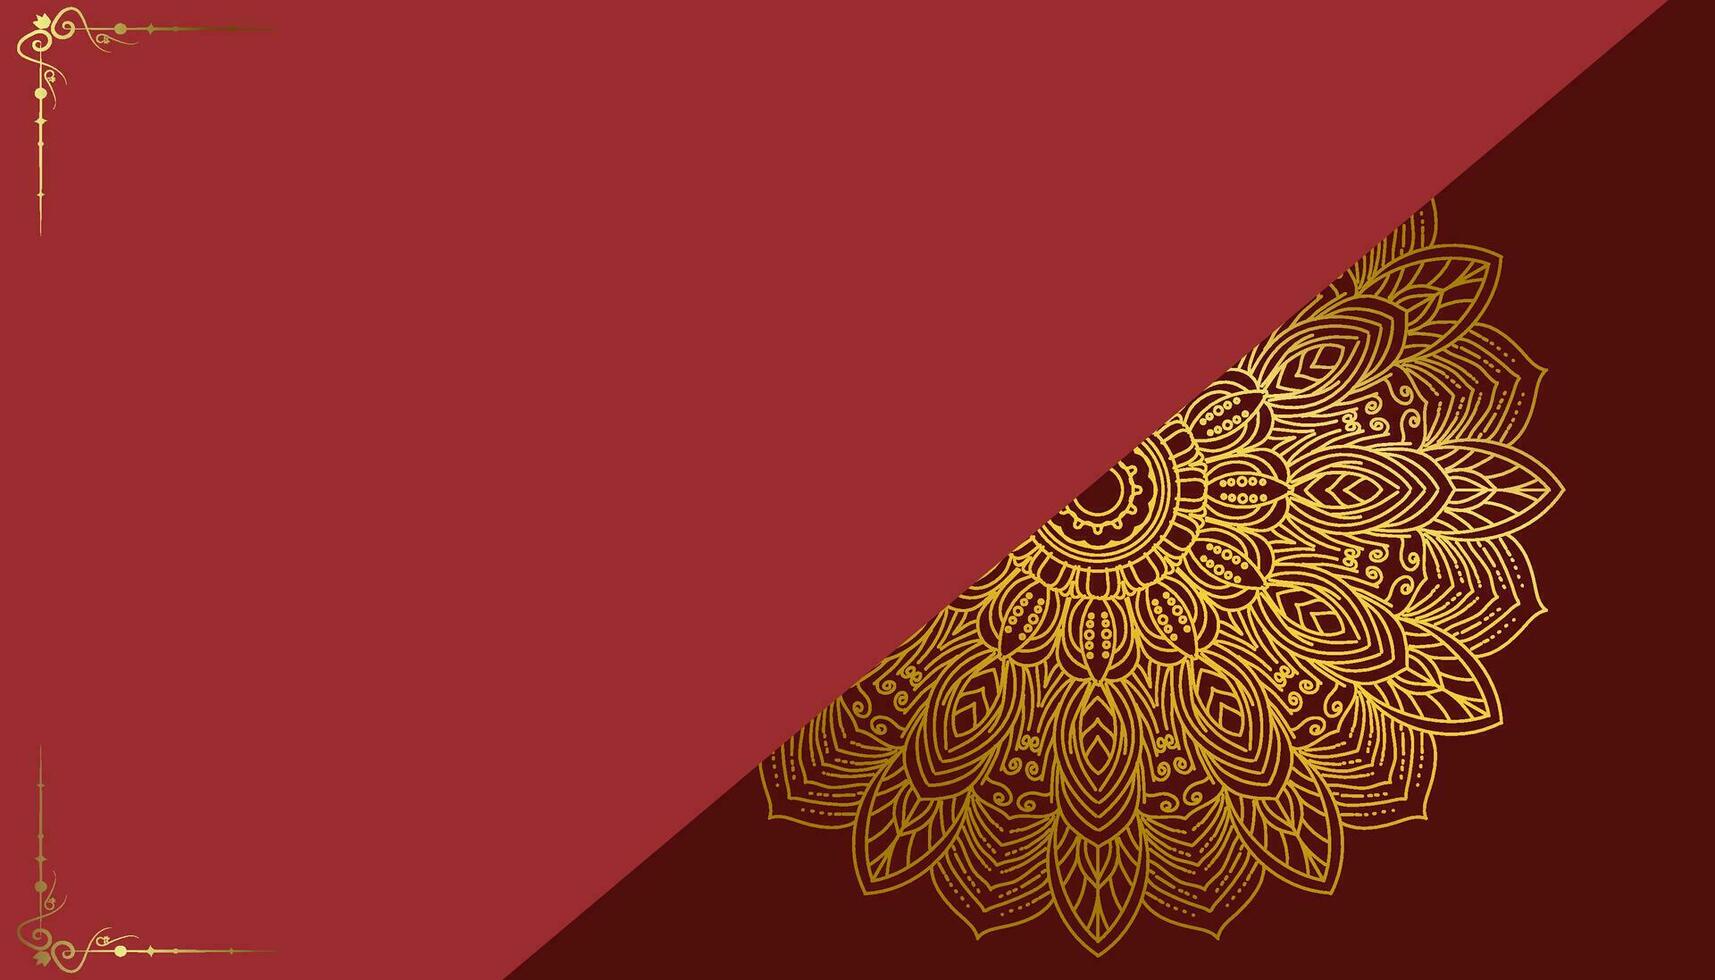 fondo de lujo rojo, con adorno de mandala dorado vector